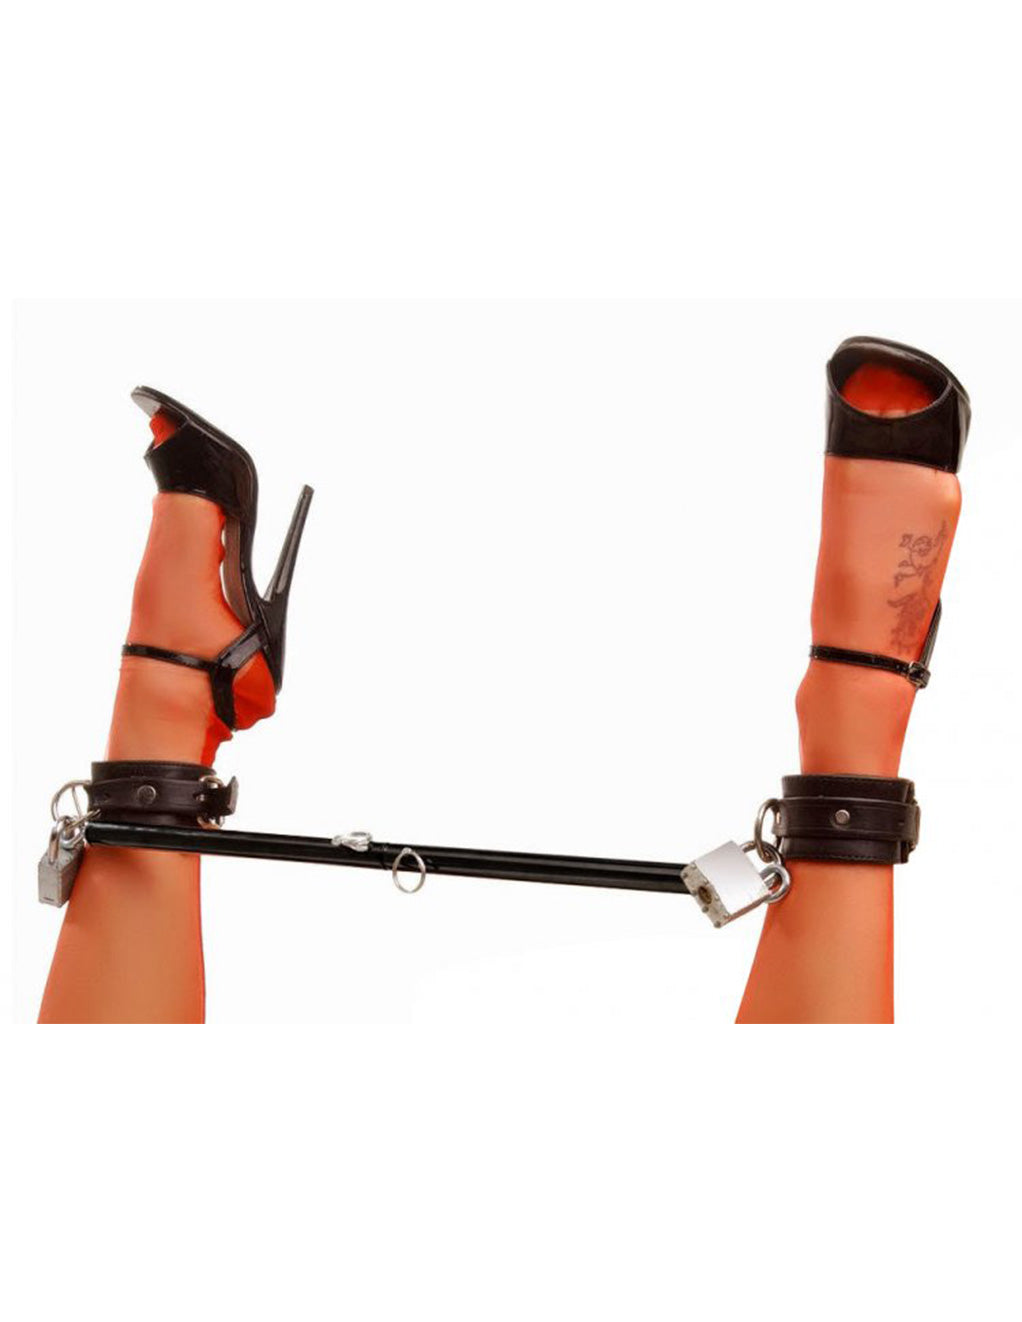 Master Series Adjustable Steel Spreader Bar- Ankle cuffs